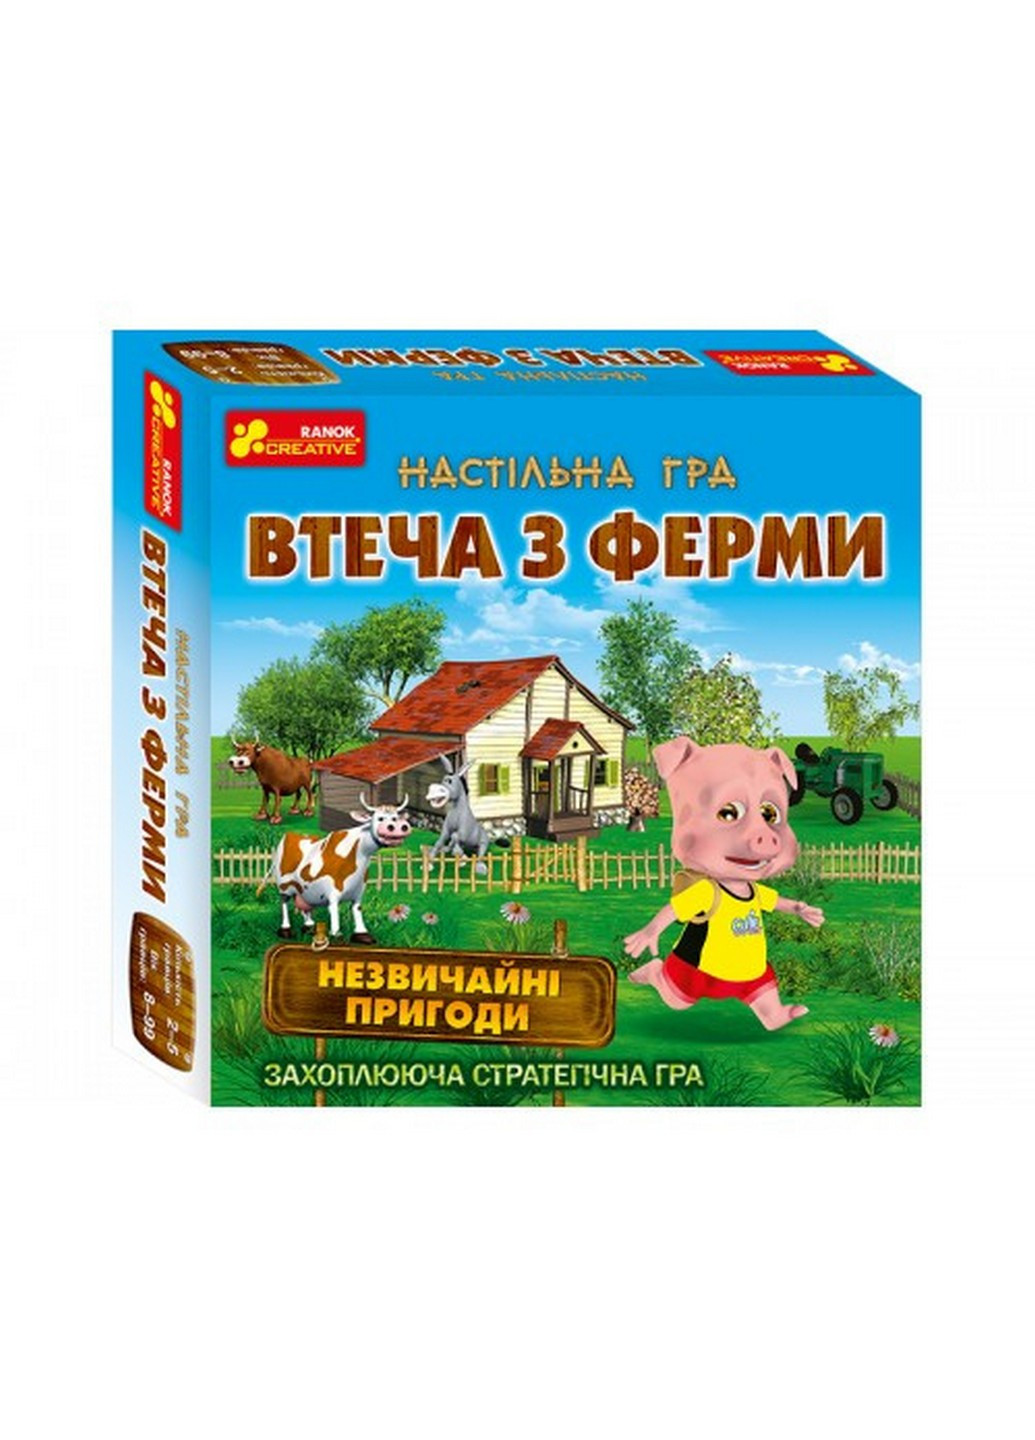 Детская настольная игра "Побег из фермы" на укр. языке 23,5х23,5х5,2 см Ranok Creative (259244506)